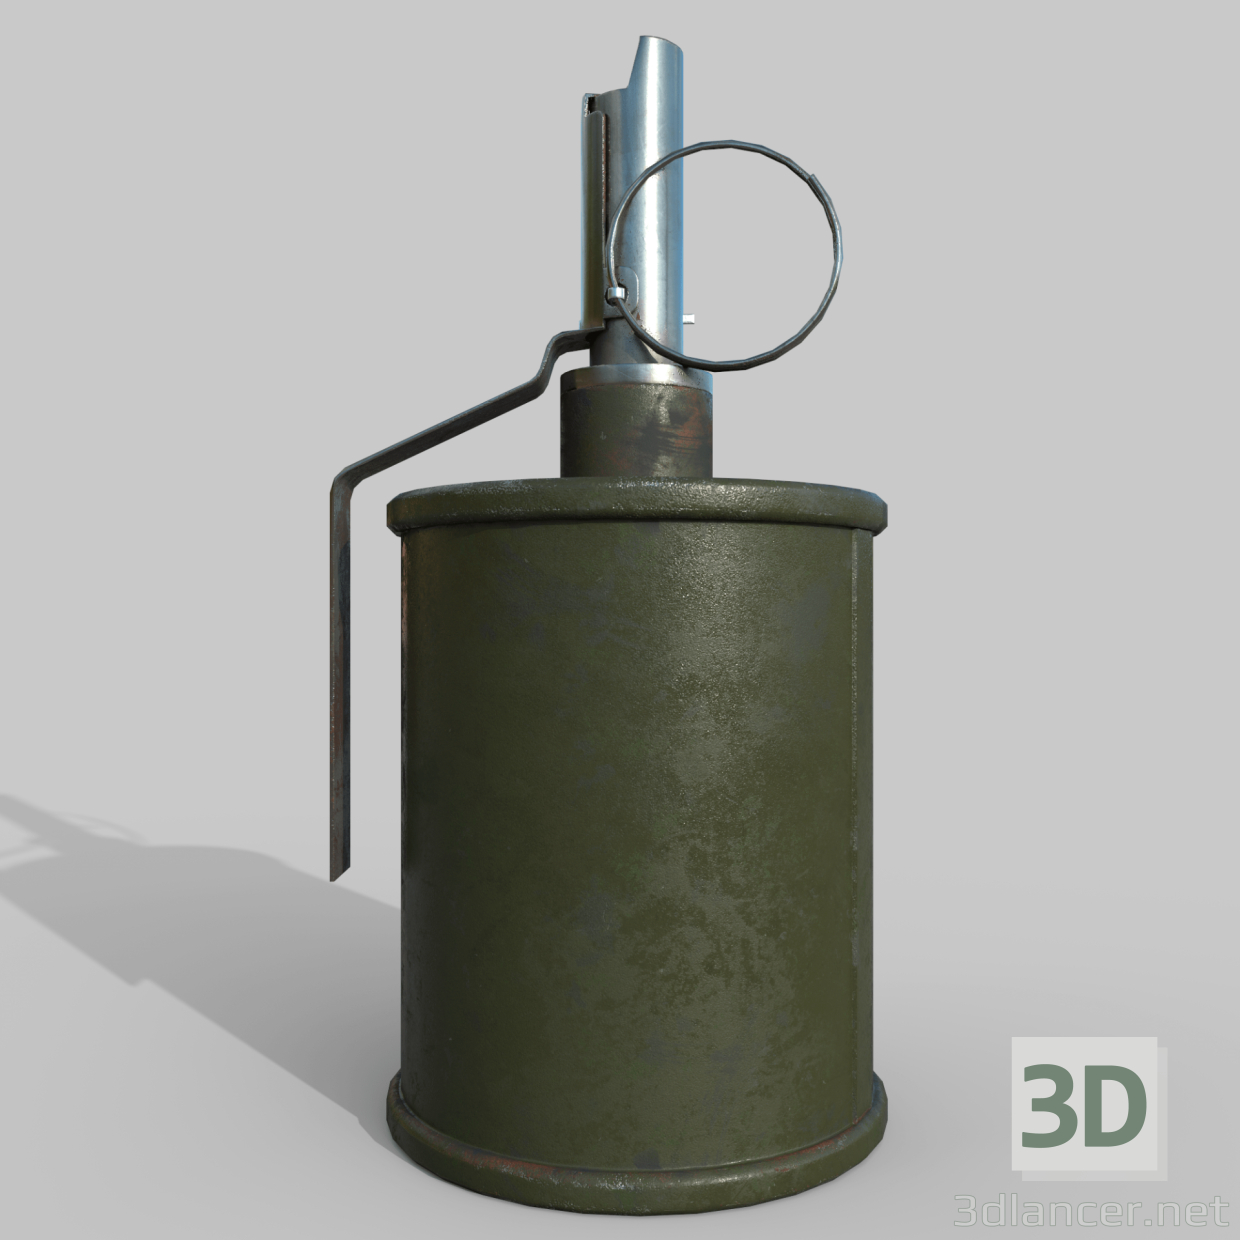 3D El bombası RG-42 modeli satın - render